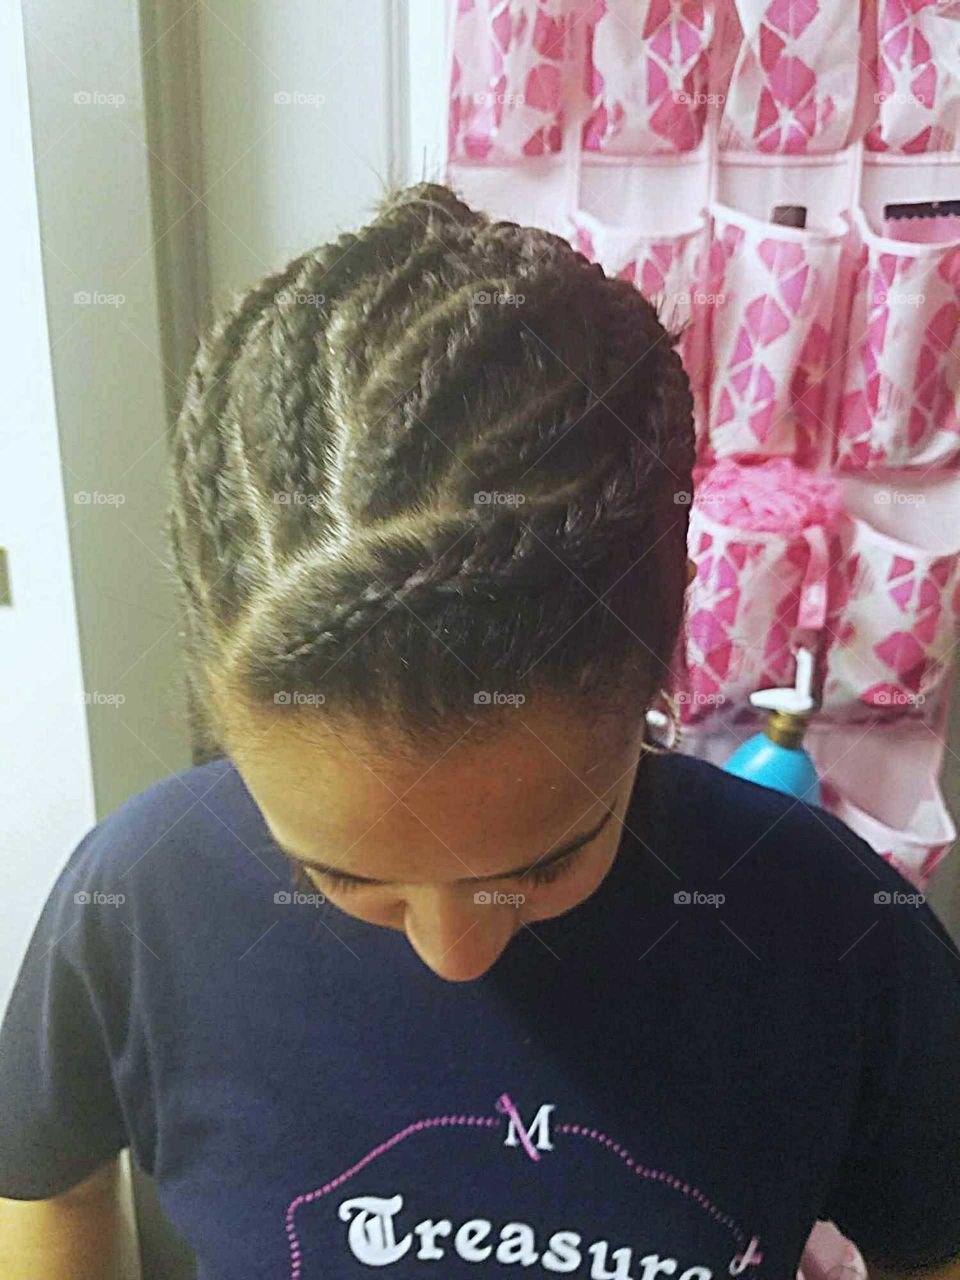 braided hair